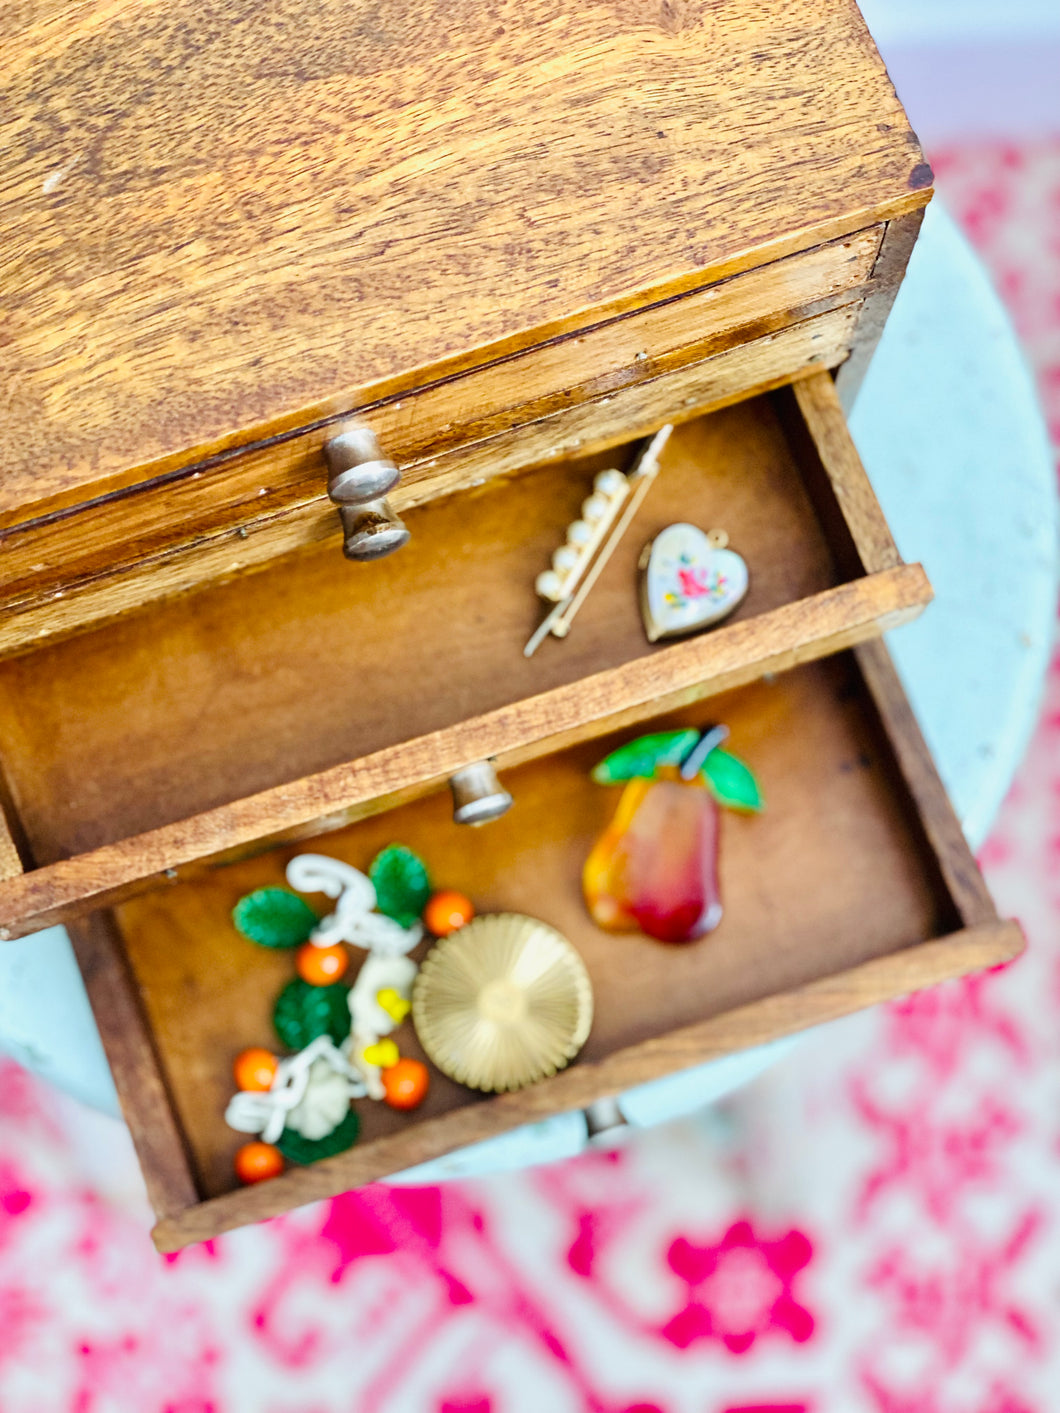 Vintage 4 drawers wooden trinket box